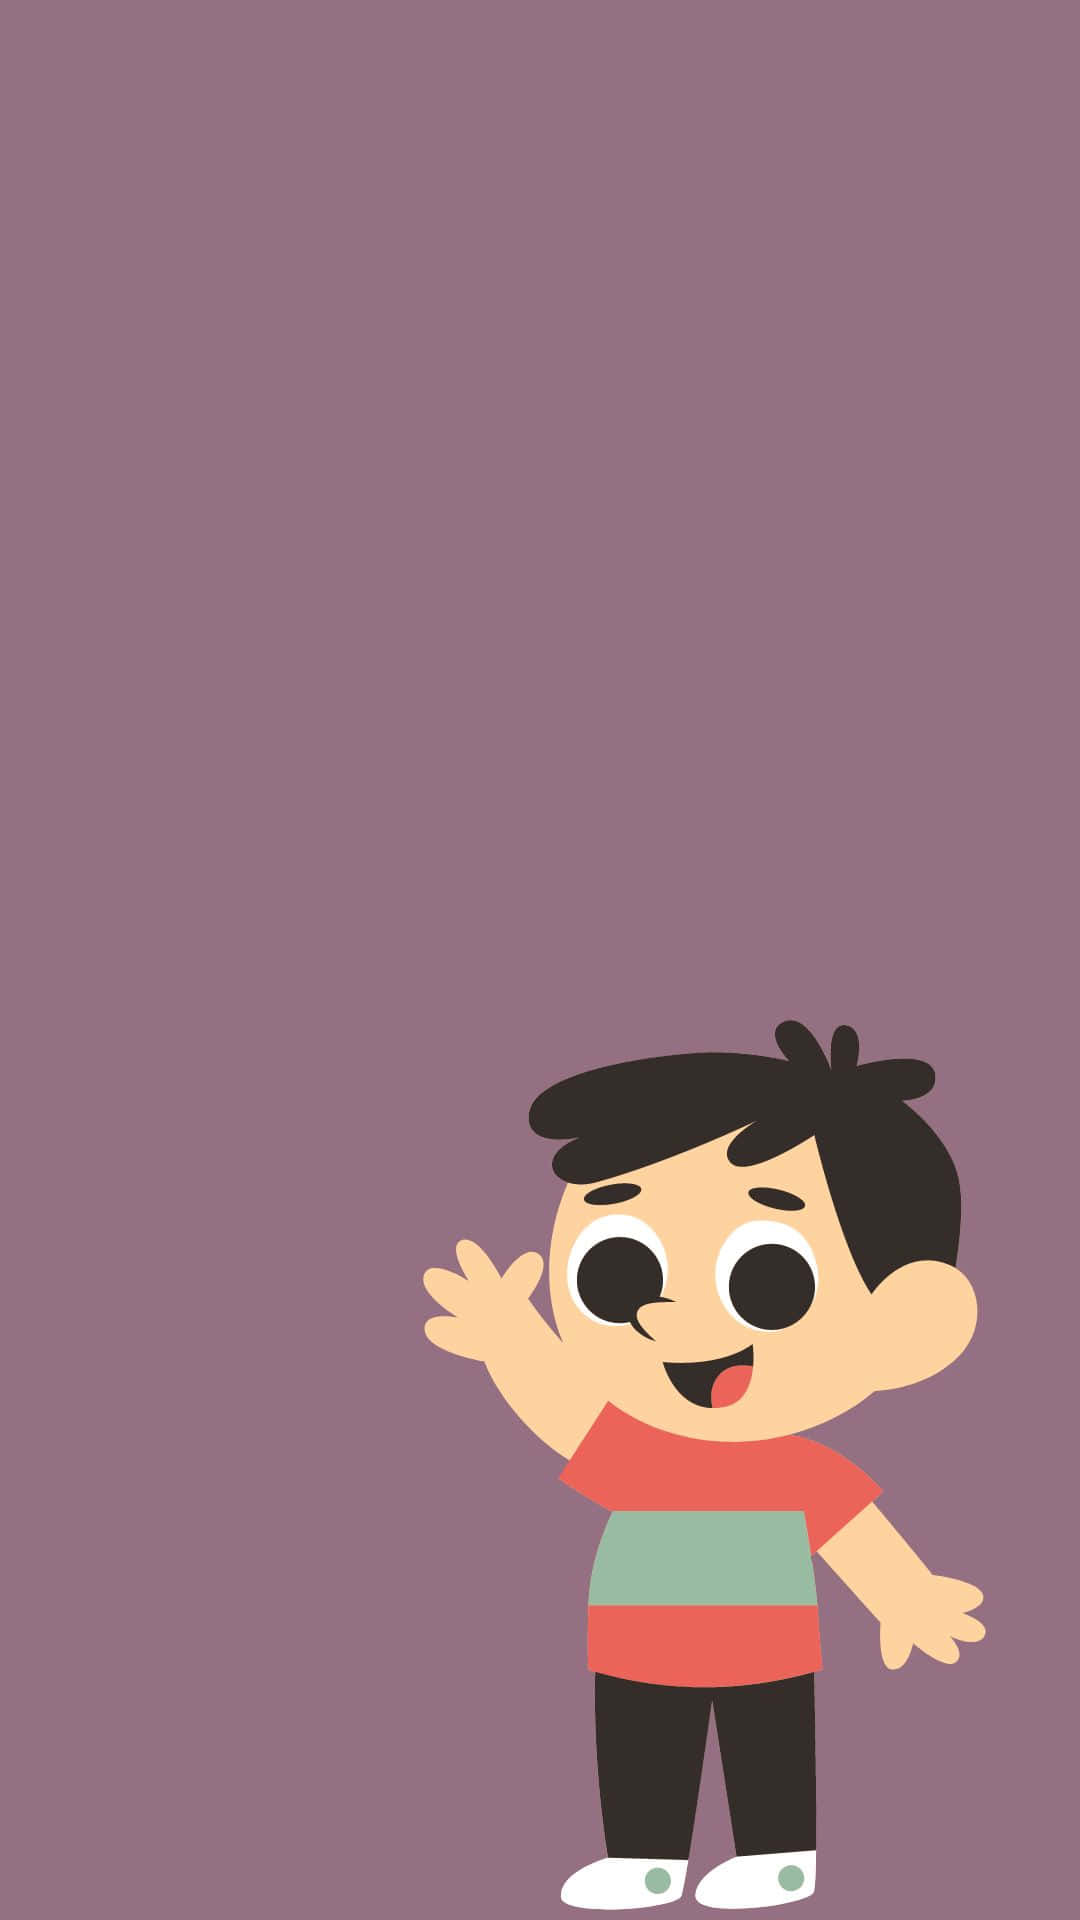 Cheerful Cartoon Boy Waving Hello Wallpaper